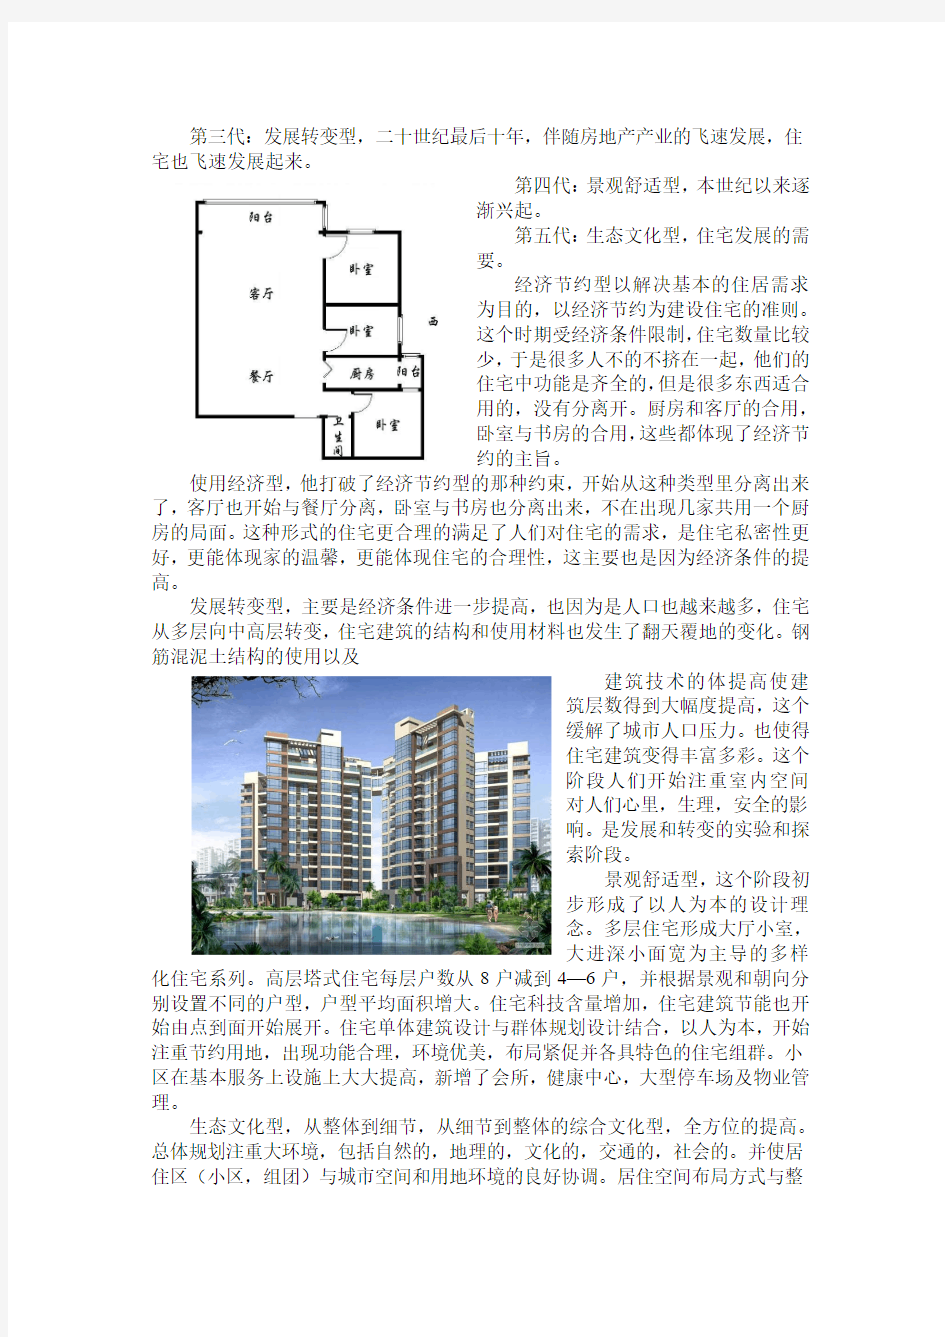 中国未来住宅发展趋势分析-共24页